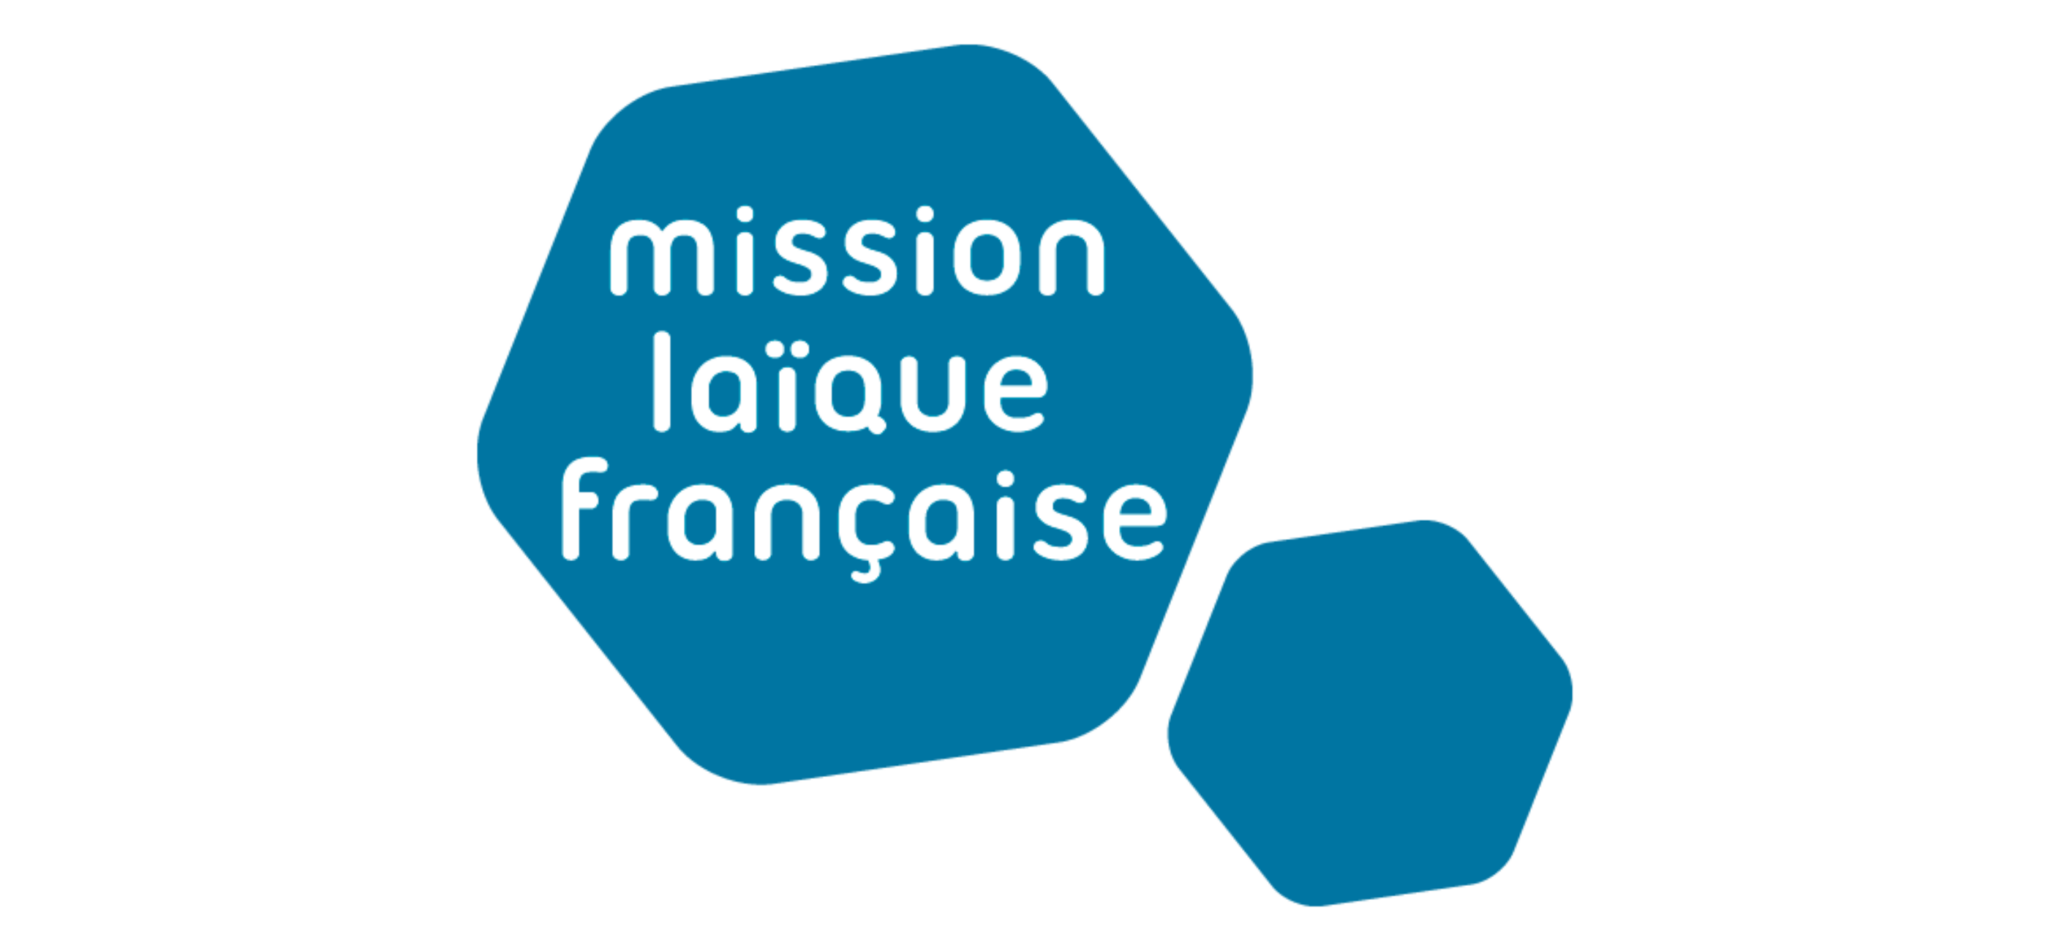 17. Mission Laique française